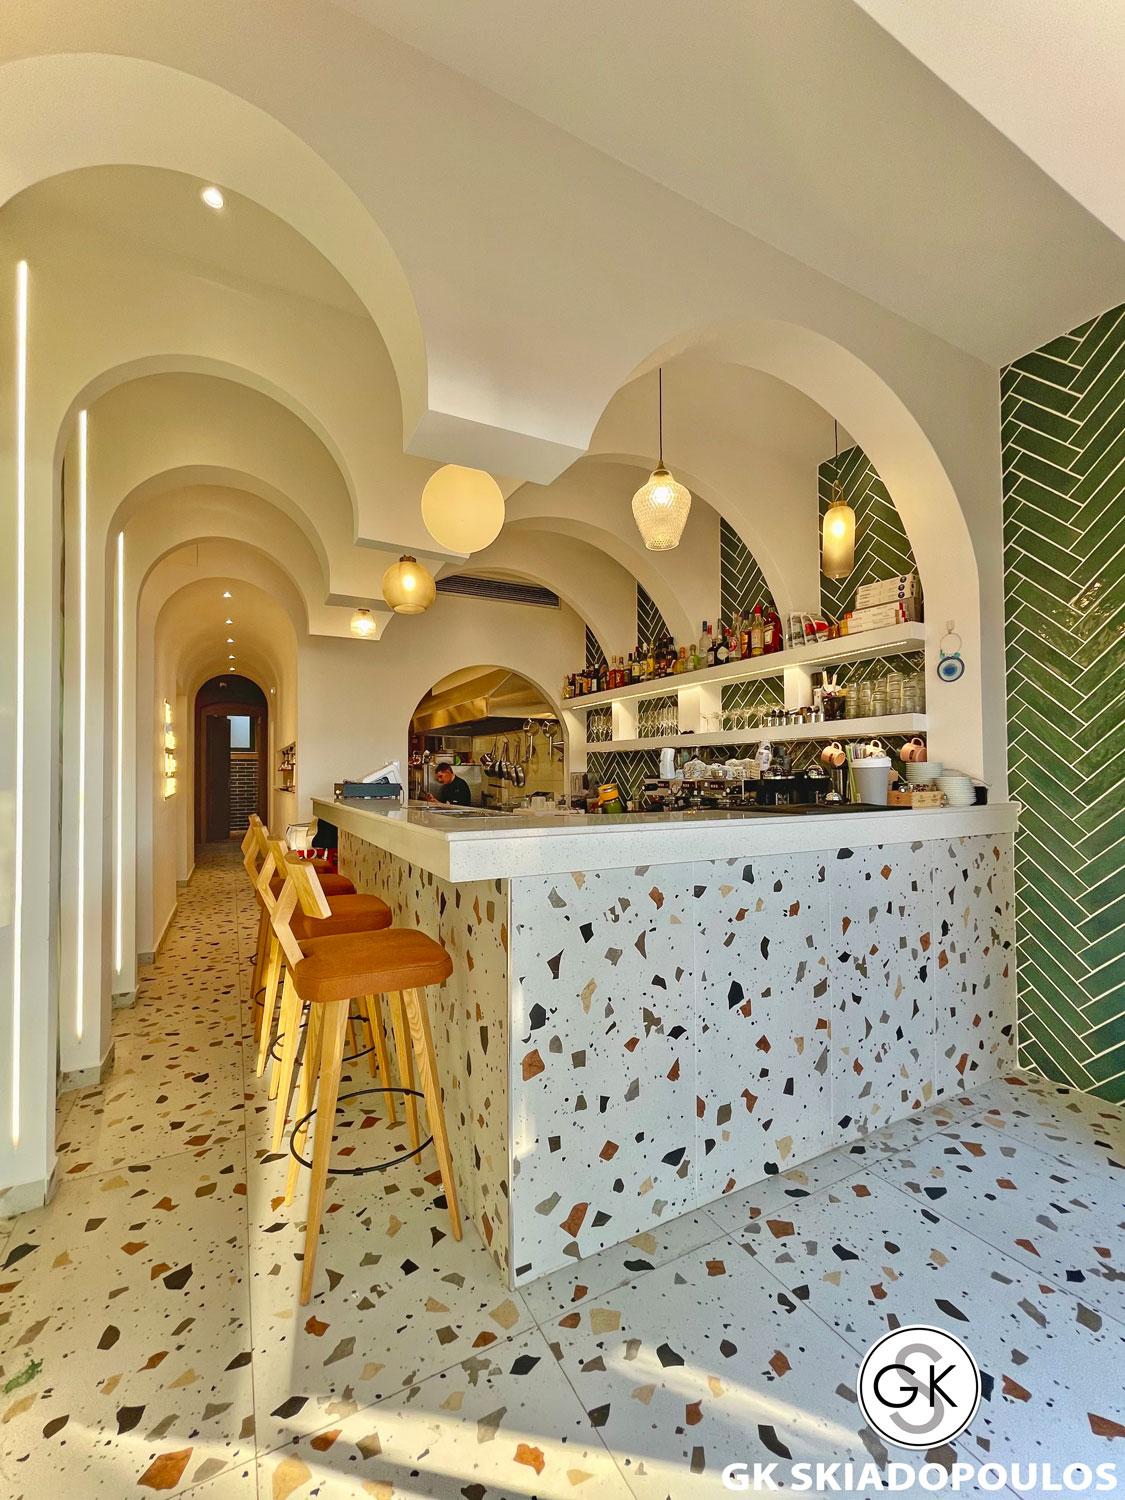 NUEVO café bar restaurant Interior Design - 3